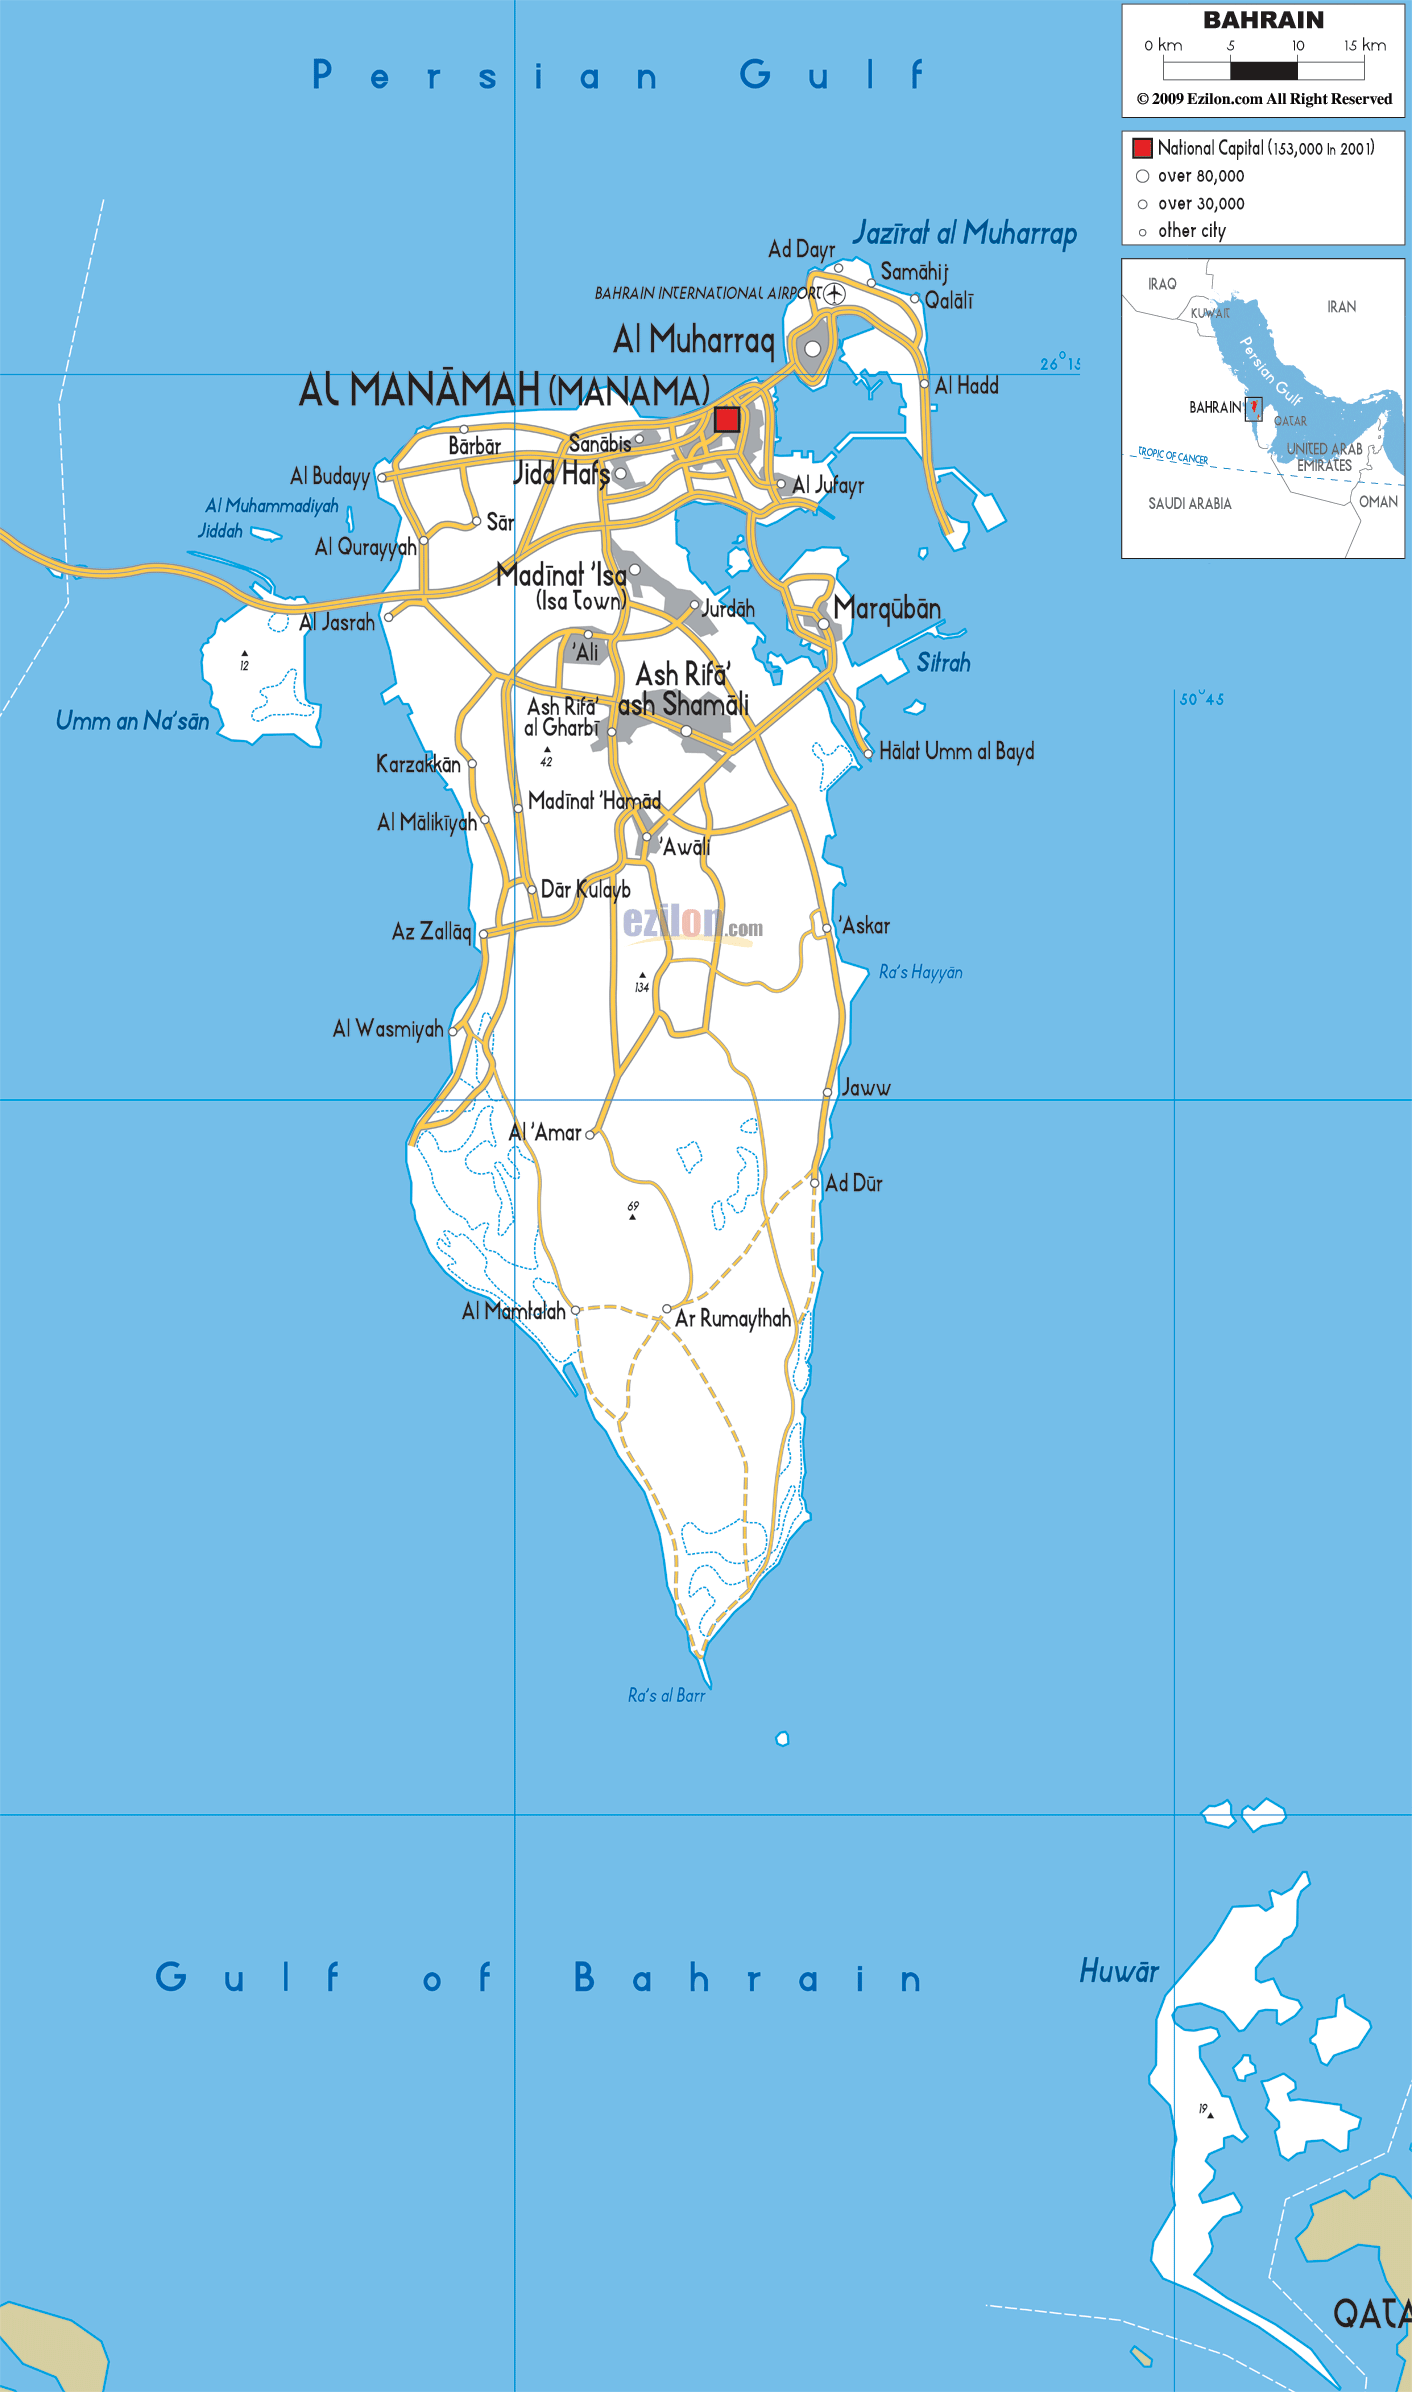 [Update] Bản đồ hành chính đất nước Bahrain (Bahrain Map) phóng to năm 2022 19